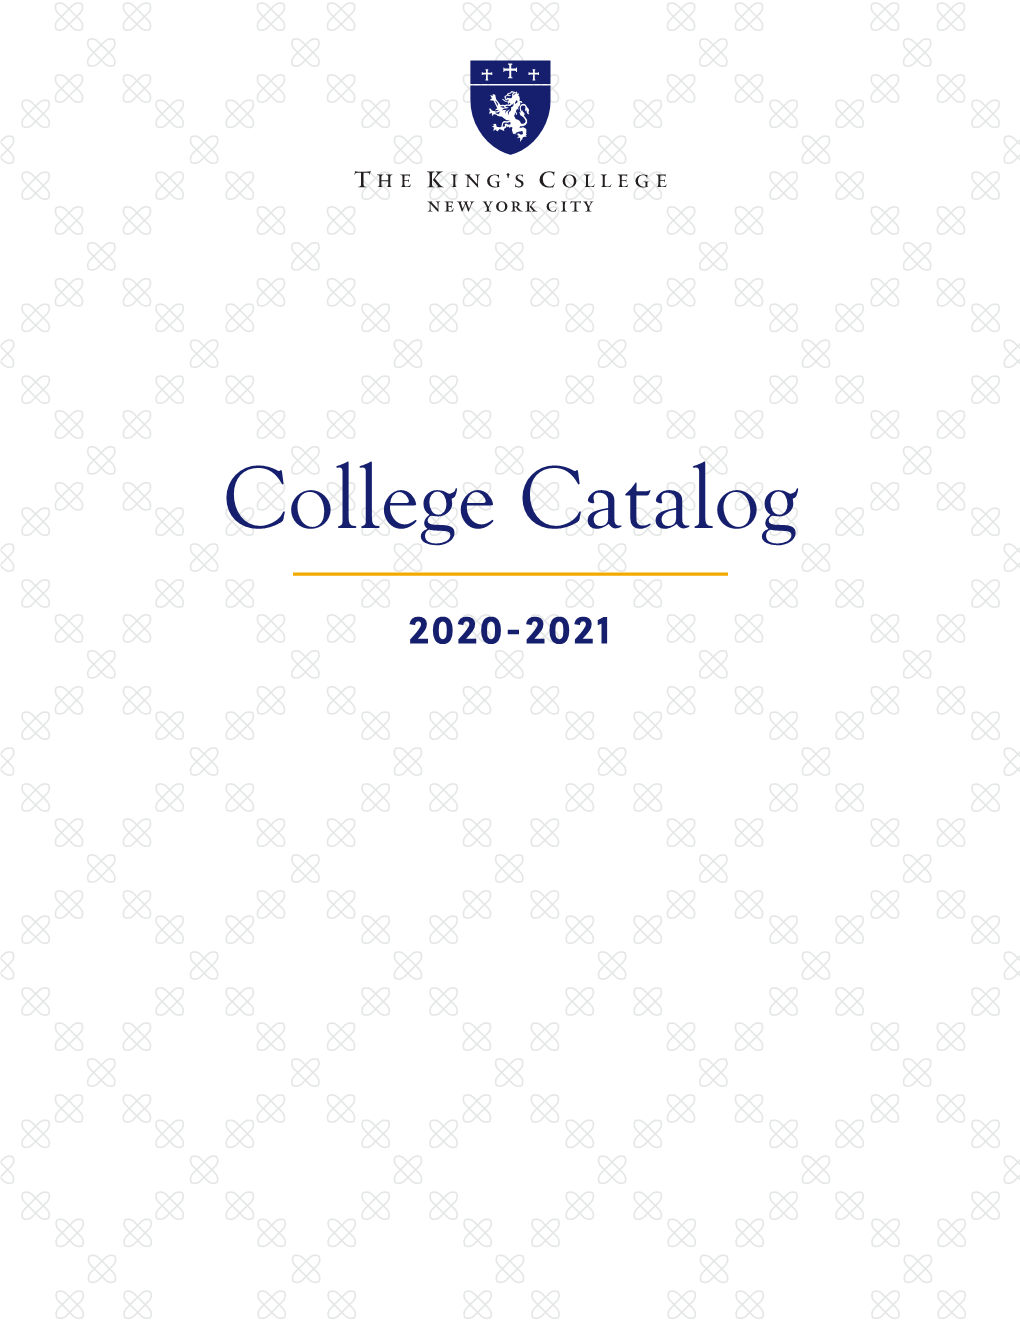 College Catalog 2020-2021